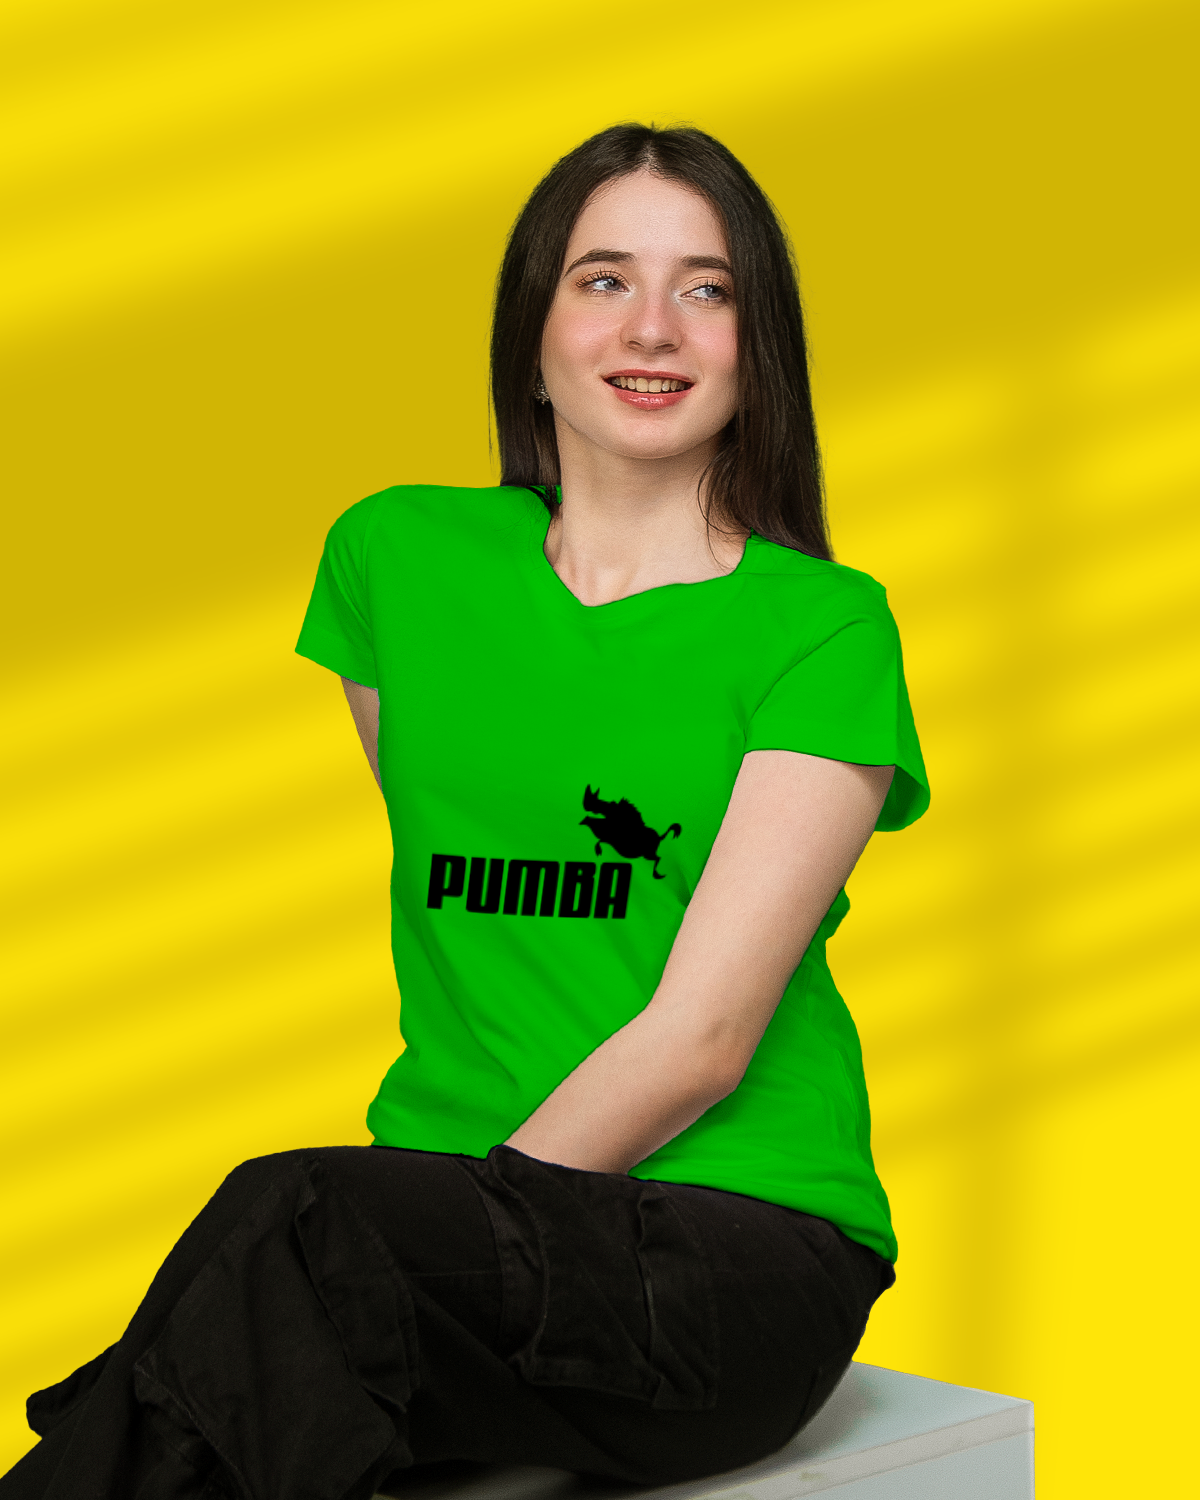 T-shirt For Women (Pumba)